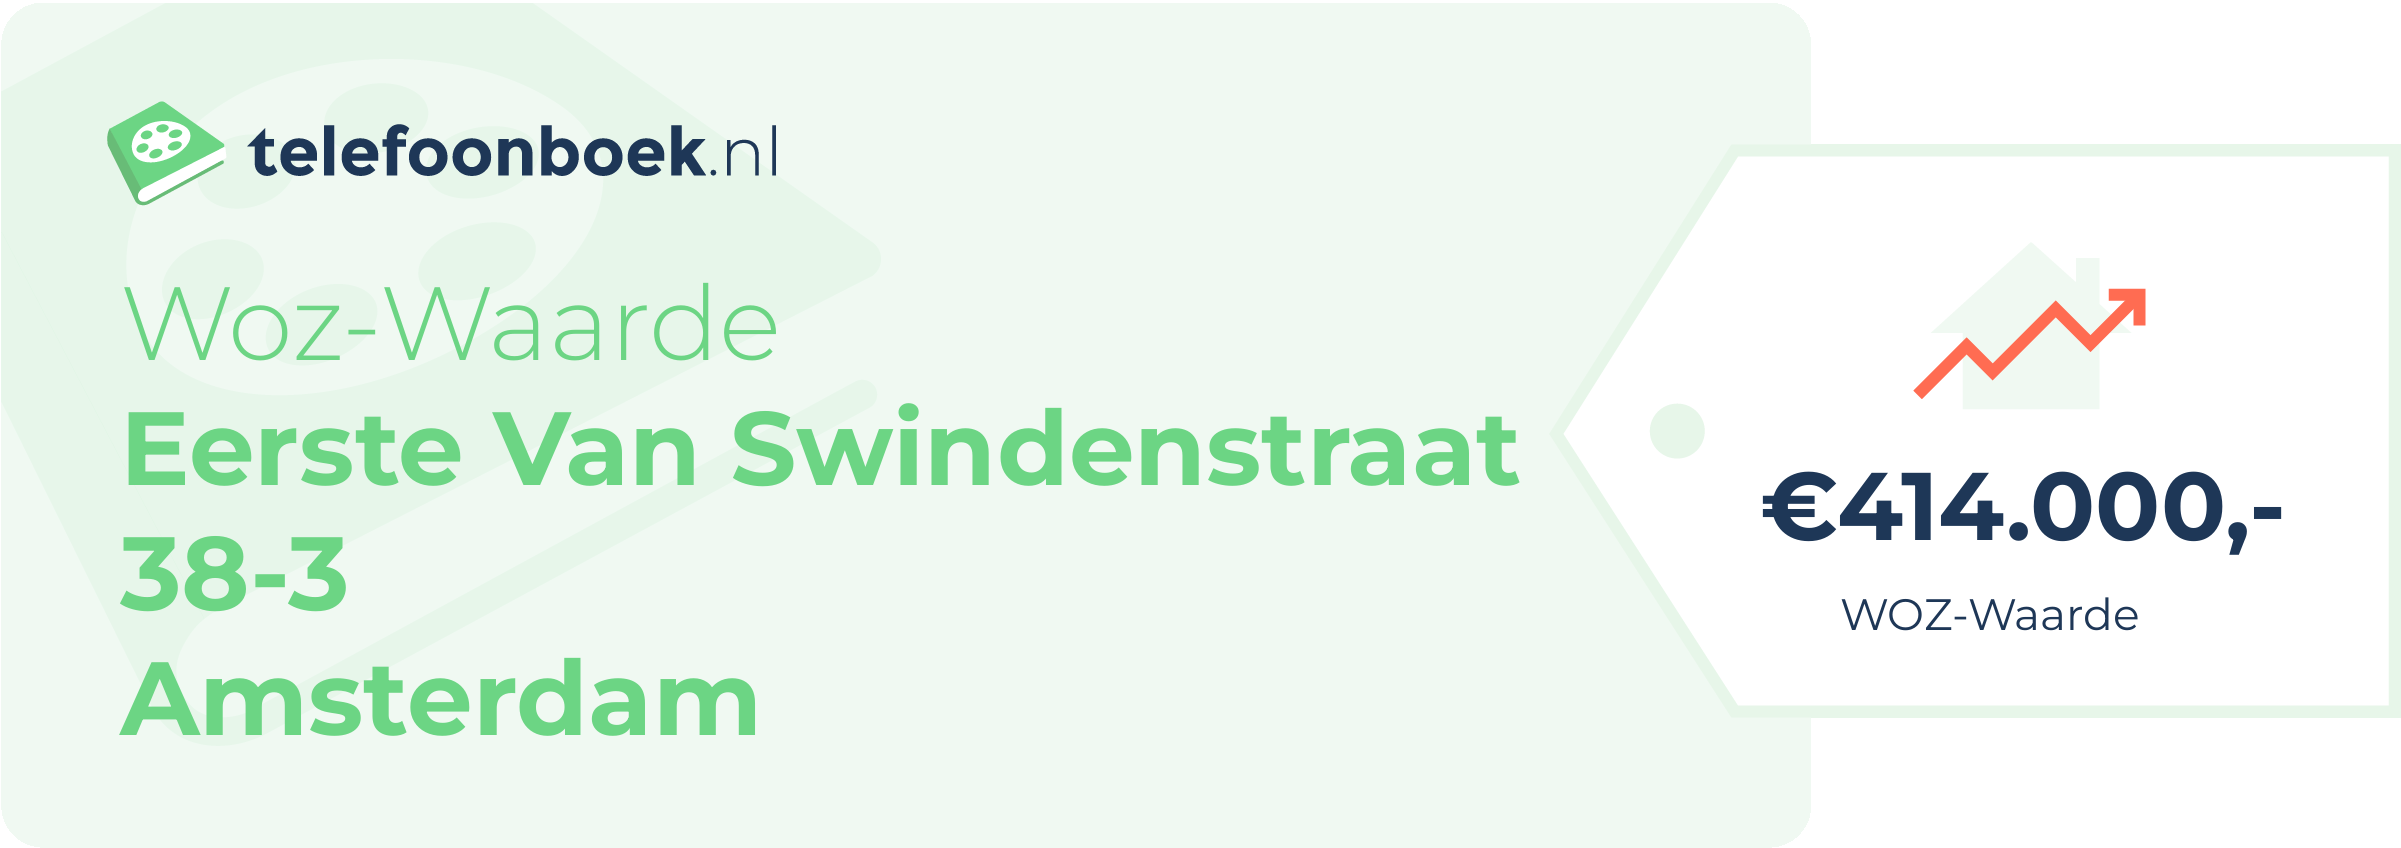 WOZ-waarde Eerste Van Swindenstraat 38-3 Amsterdam